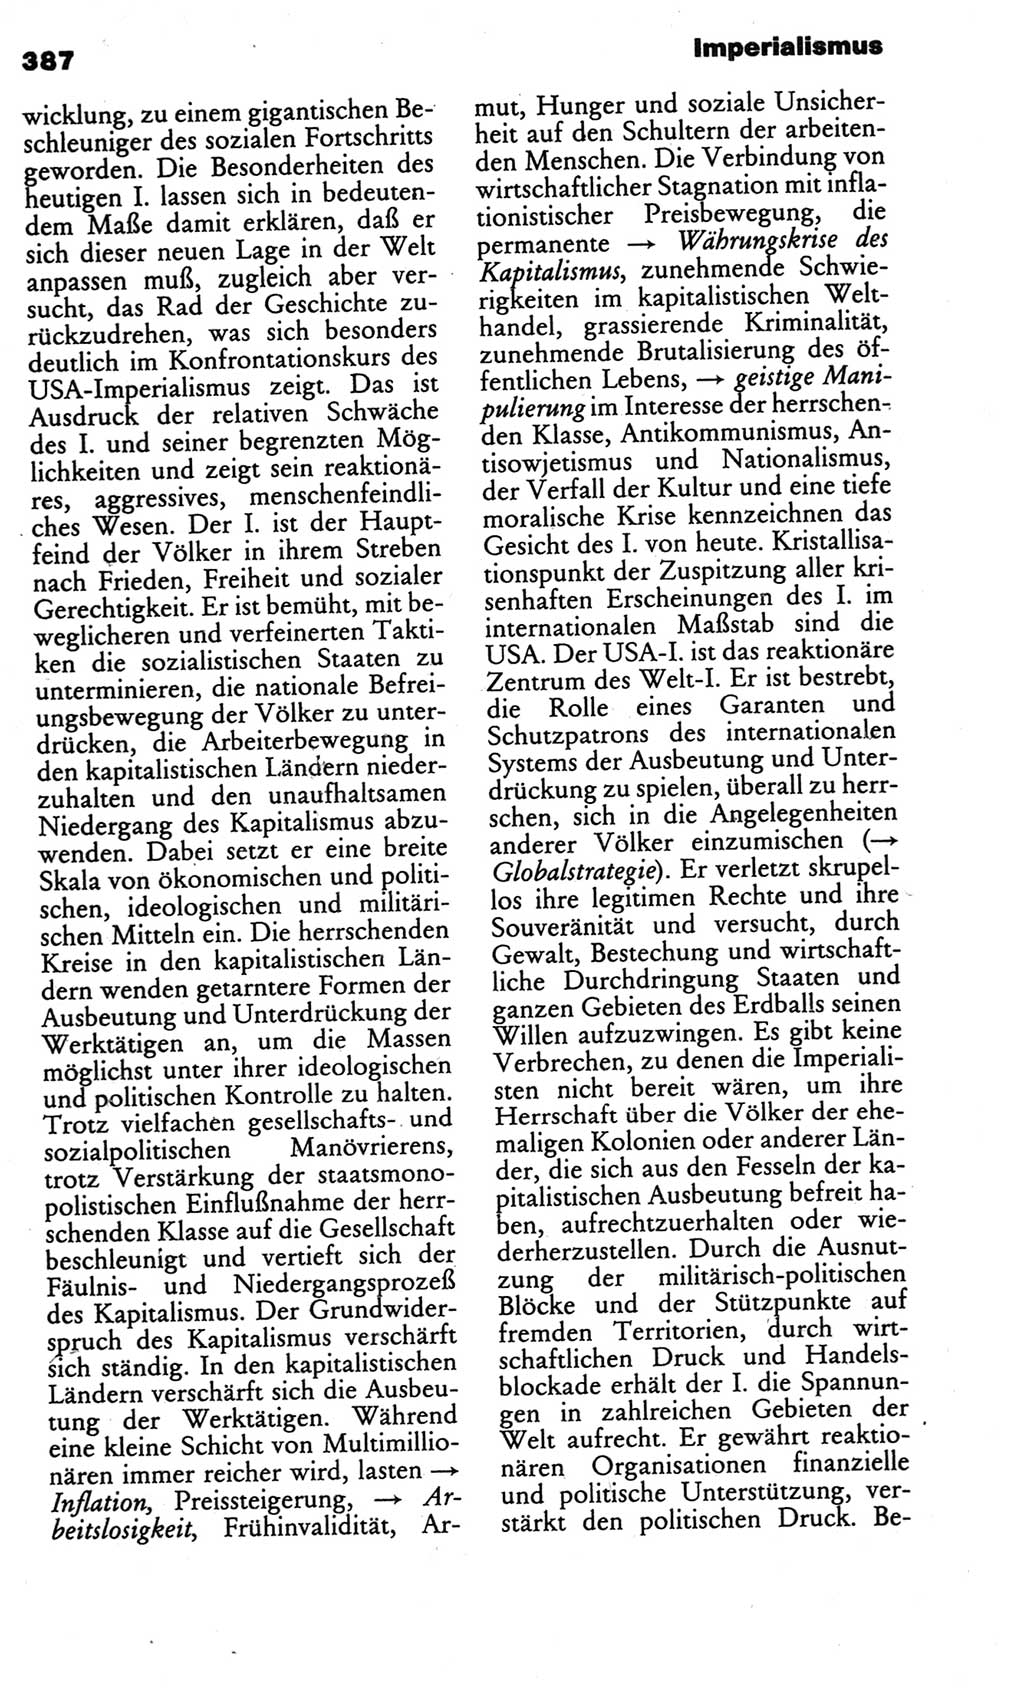 Kleines politisches Wörterbuch [Deutsche Demokratische Republik (DDR)] 1986, Seite 387 (Kl. pol. Wb. DDR 1986, S. 387)